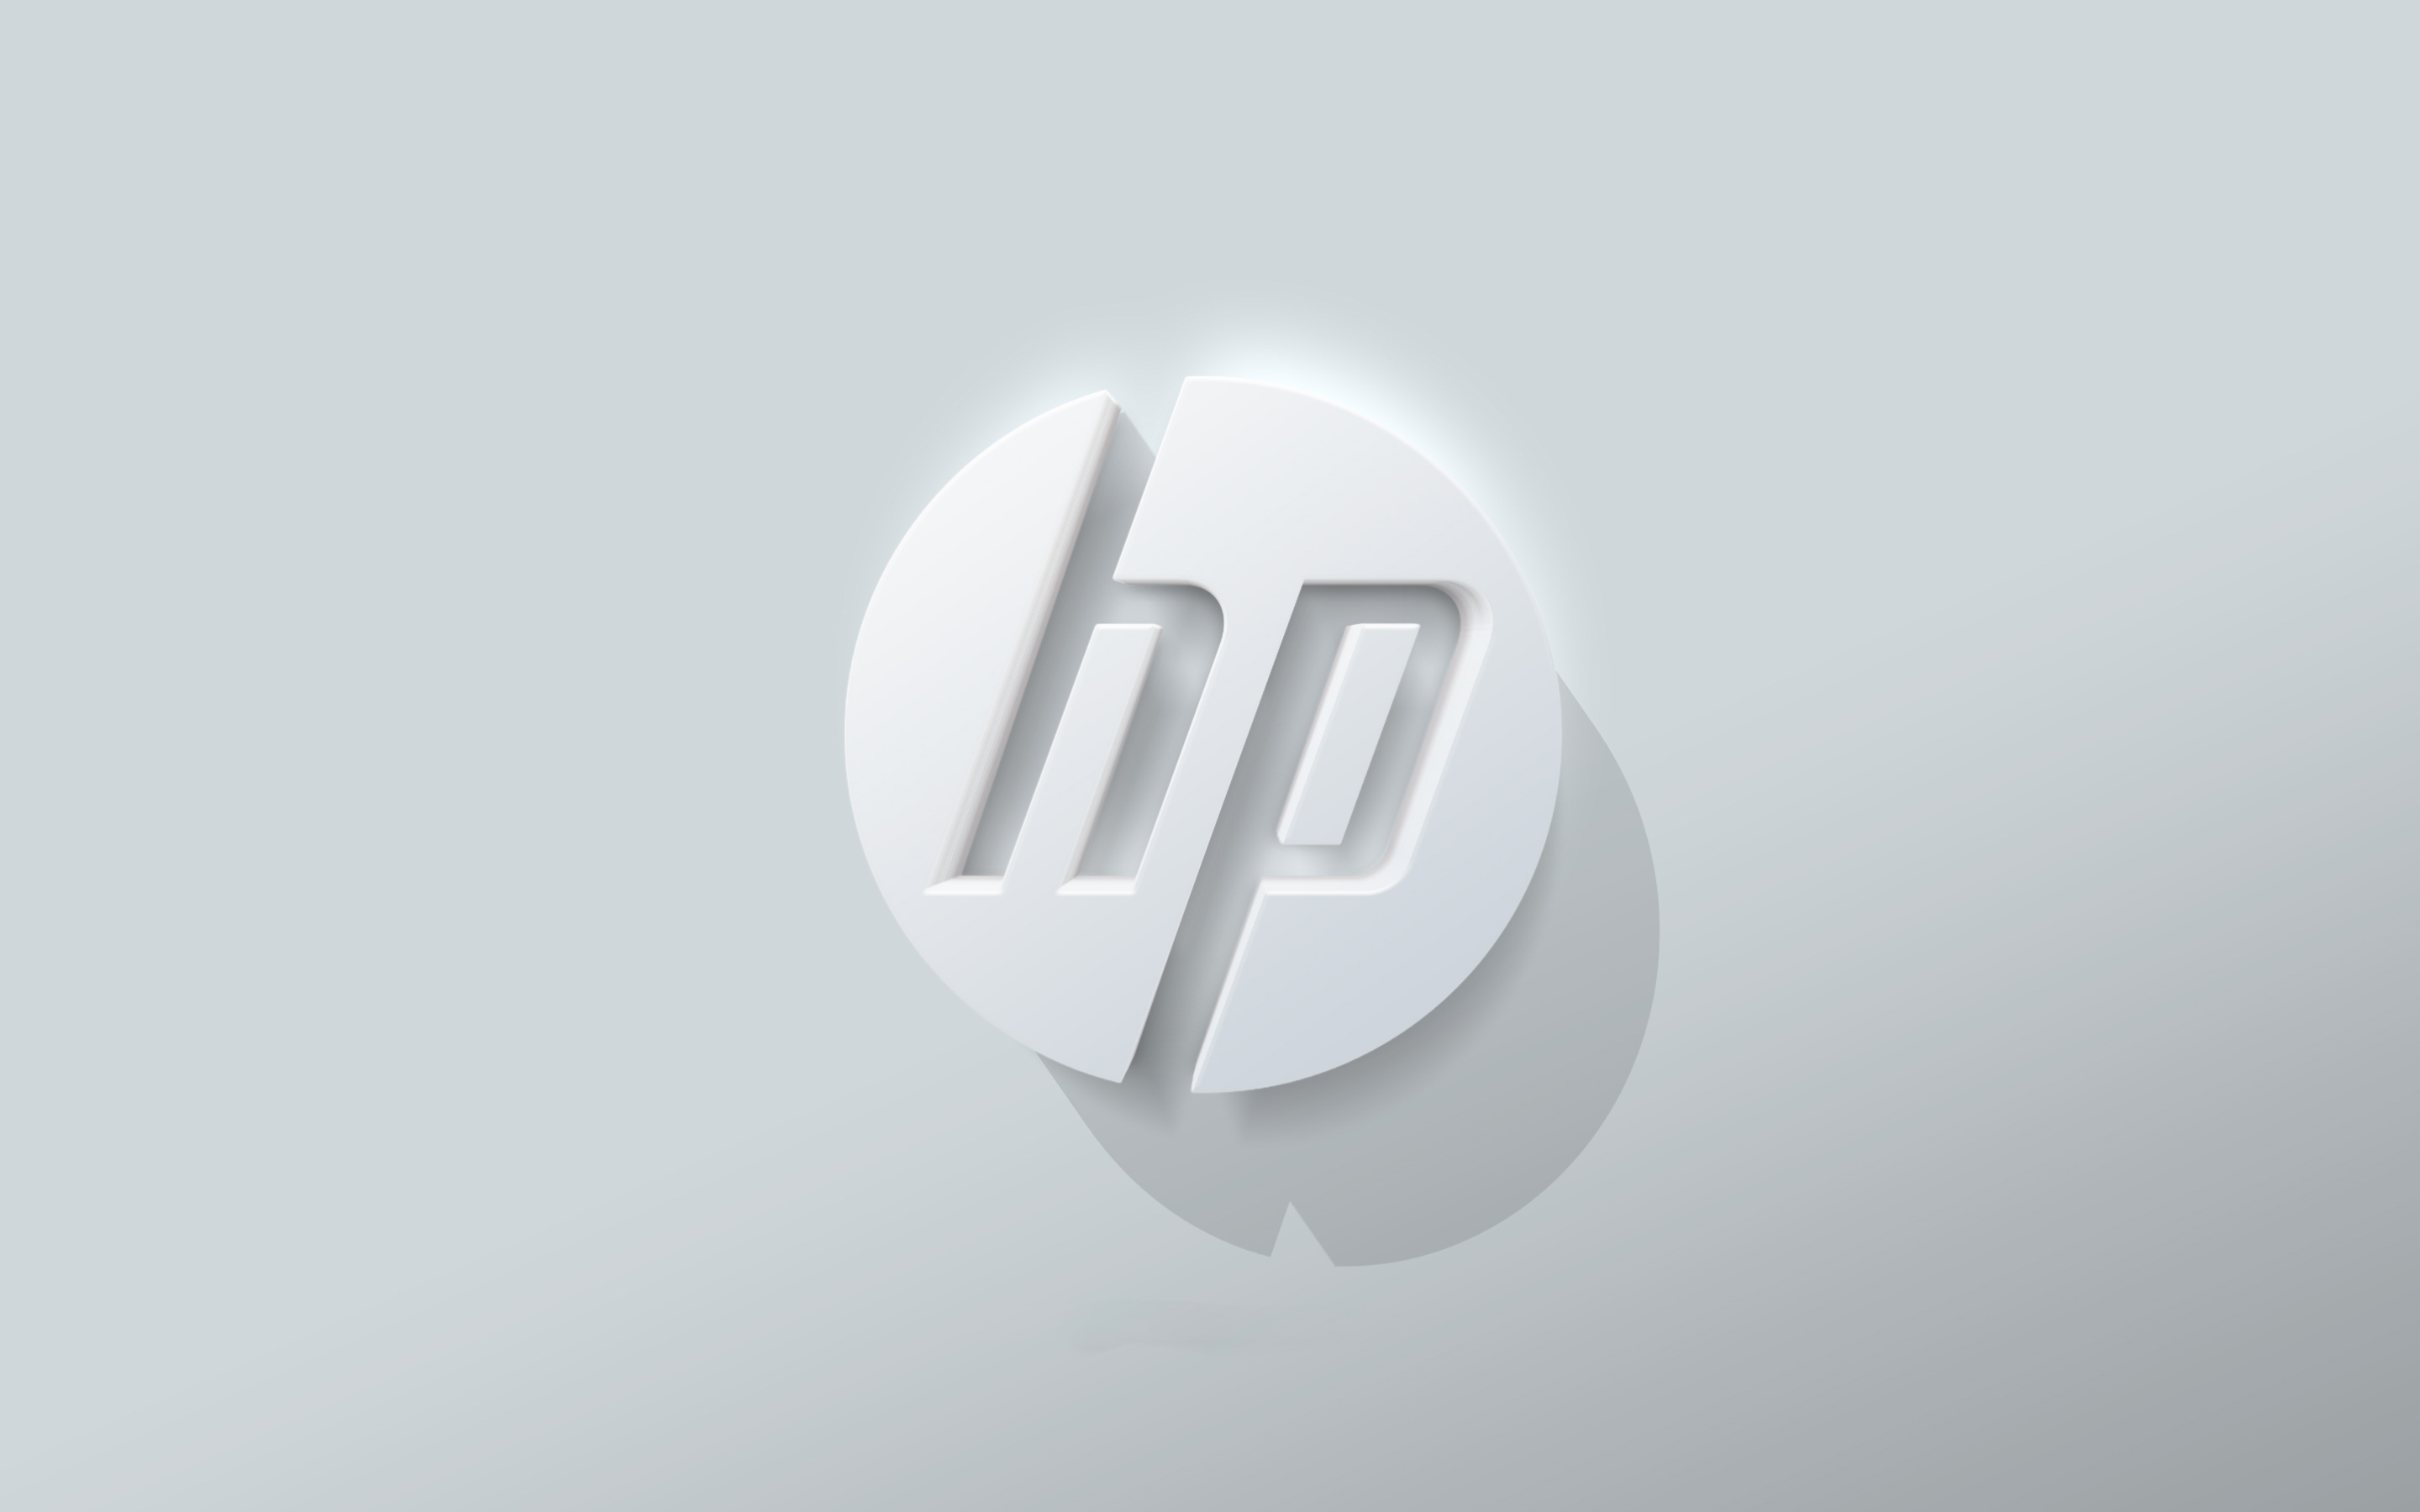 Technology Hewlett-Packard HD Wallpaper | Background Image